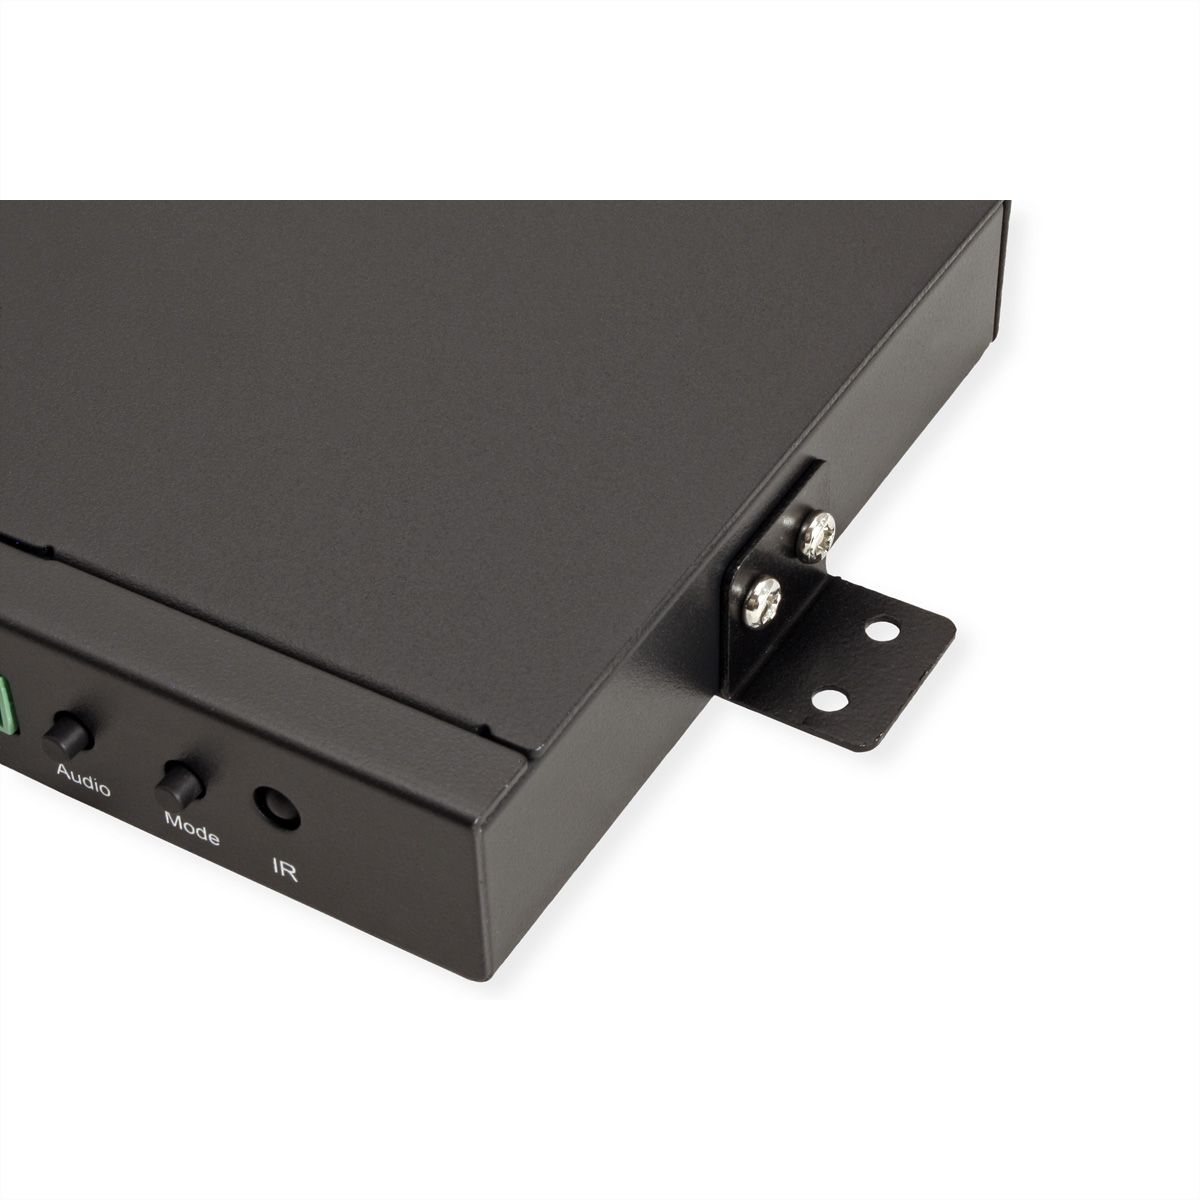 ROLINE HDMI 4x1 QUAD Multi-Viewer Umschaltung nahtlose Switch, HDMI-Video-Switch